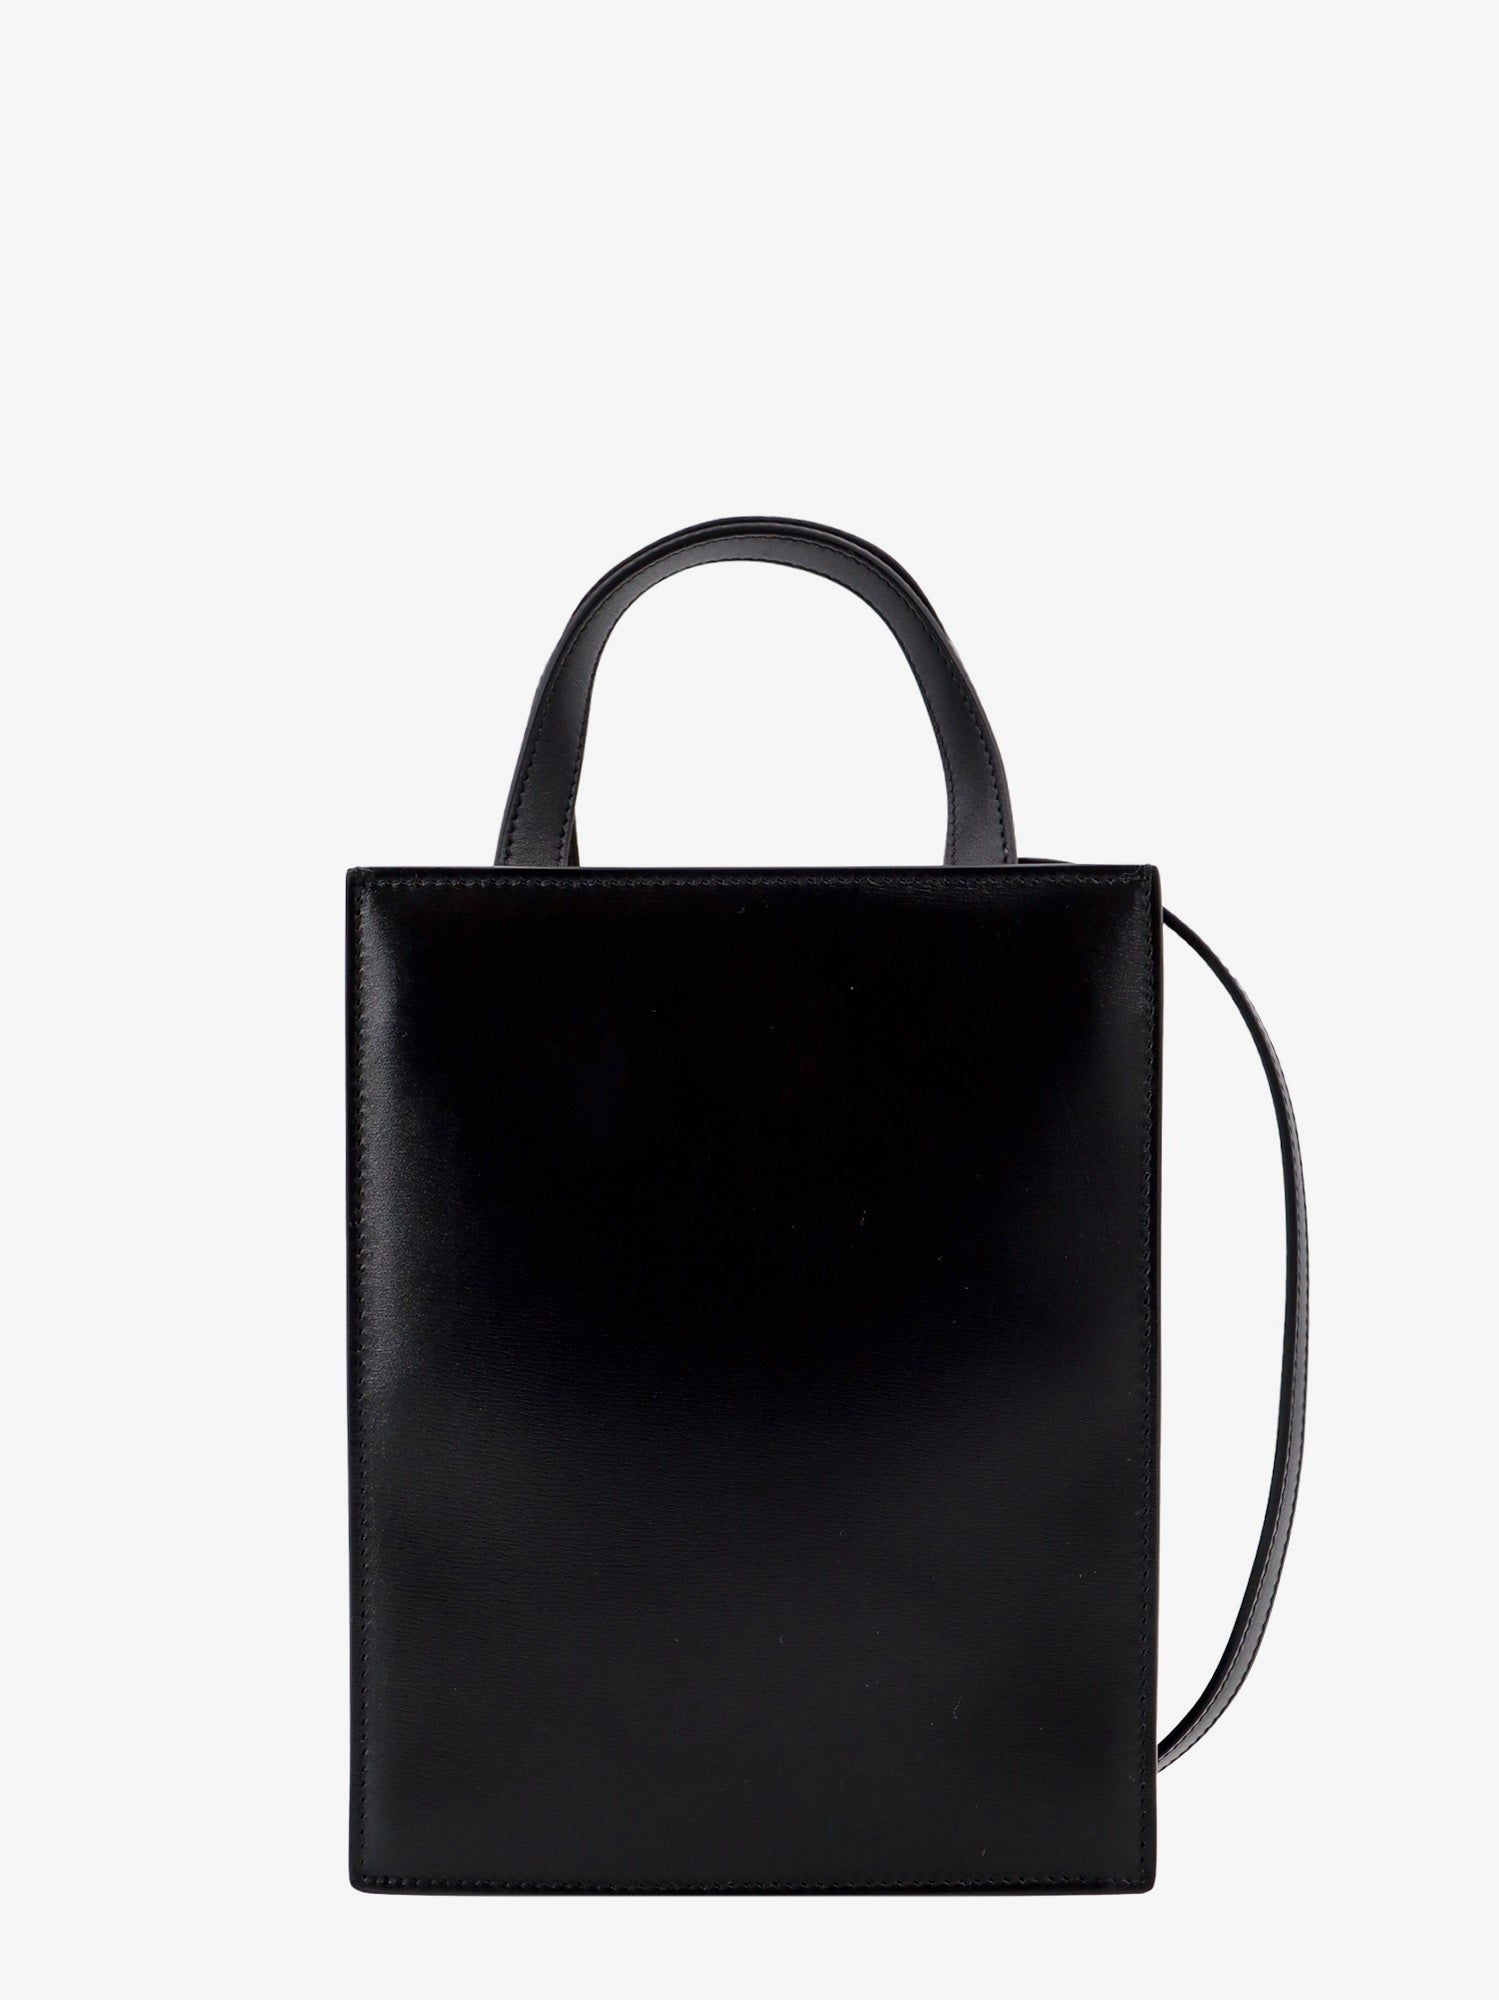 Shop Ferragamo Woman Mini Tote Bag Woman Black Handbags